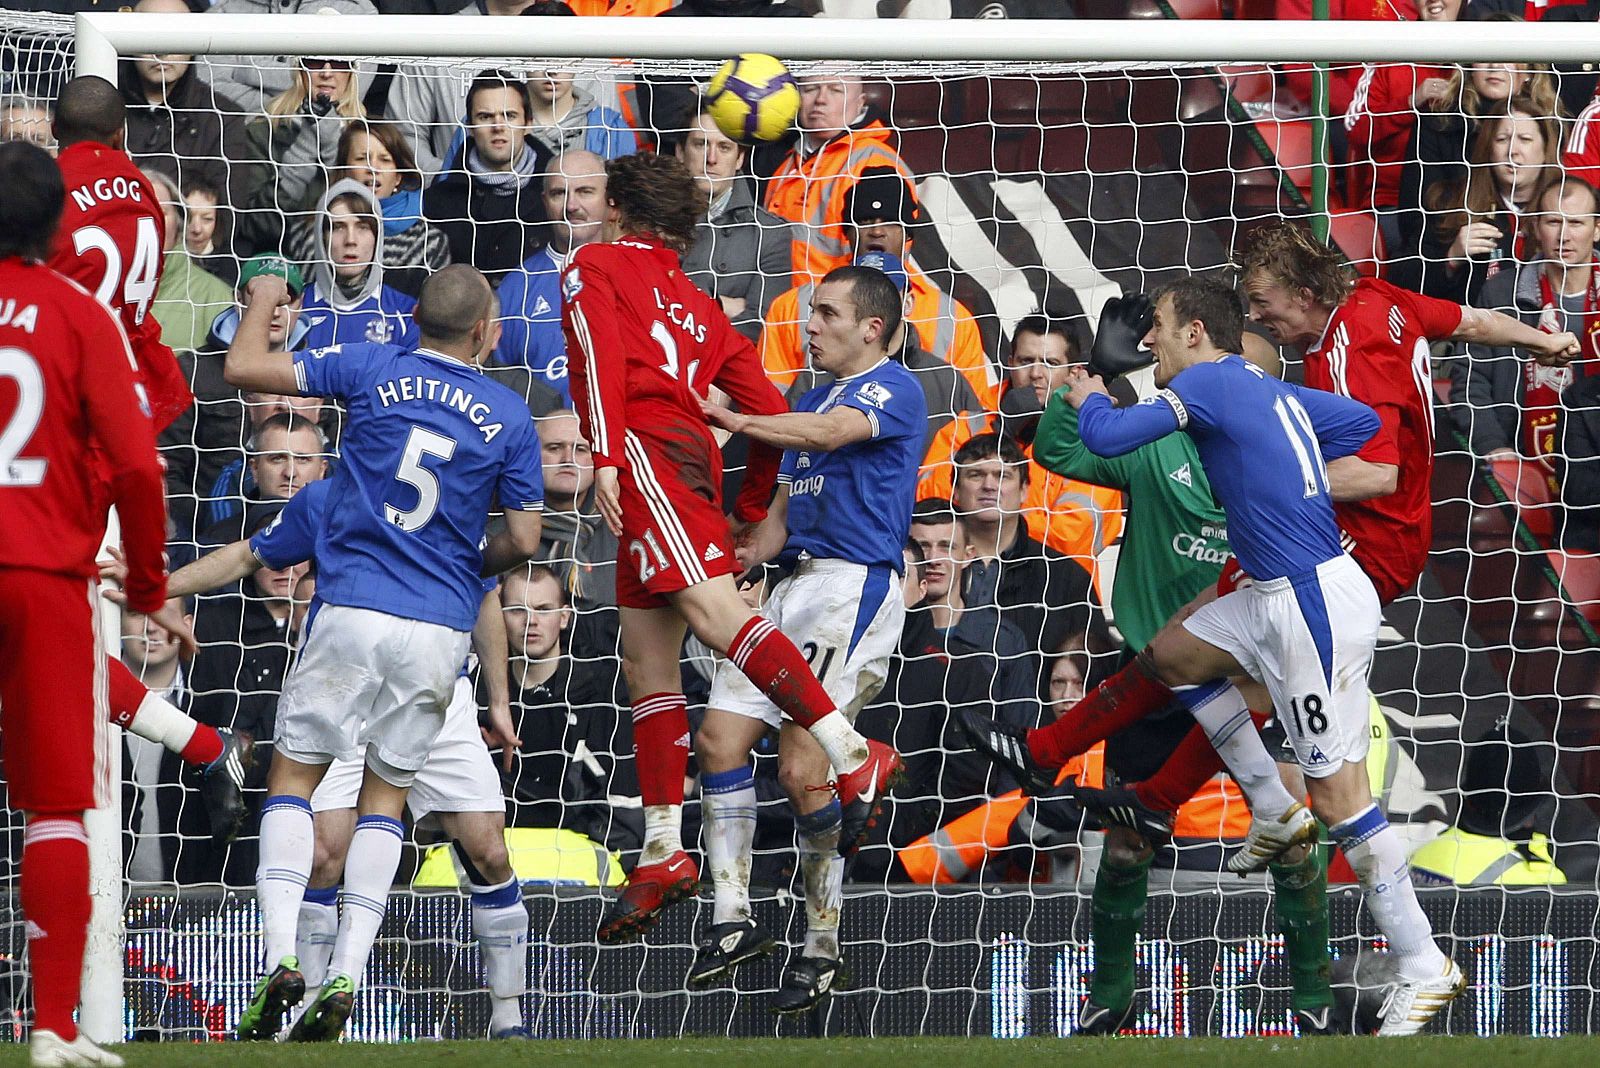 Imagen del gol del jugador del Liverpool Dirk Kuyt contra el Everton.